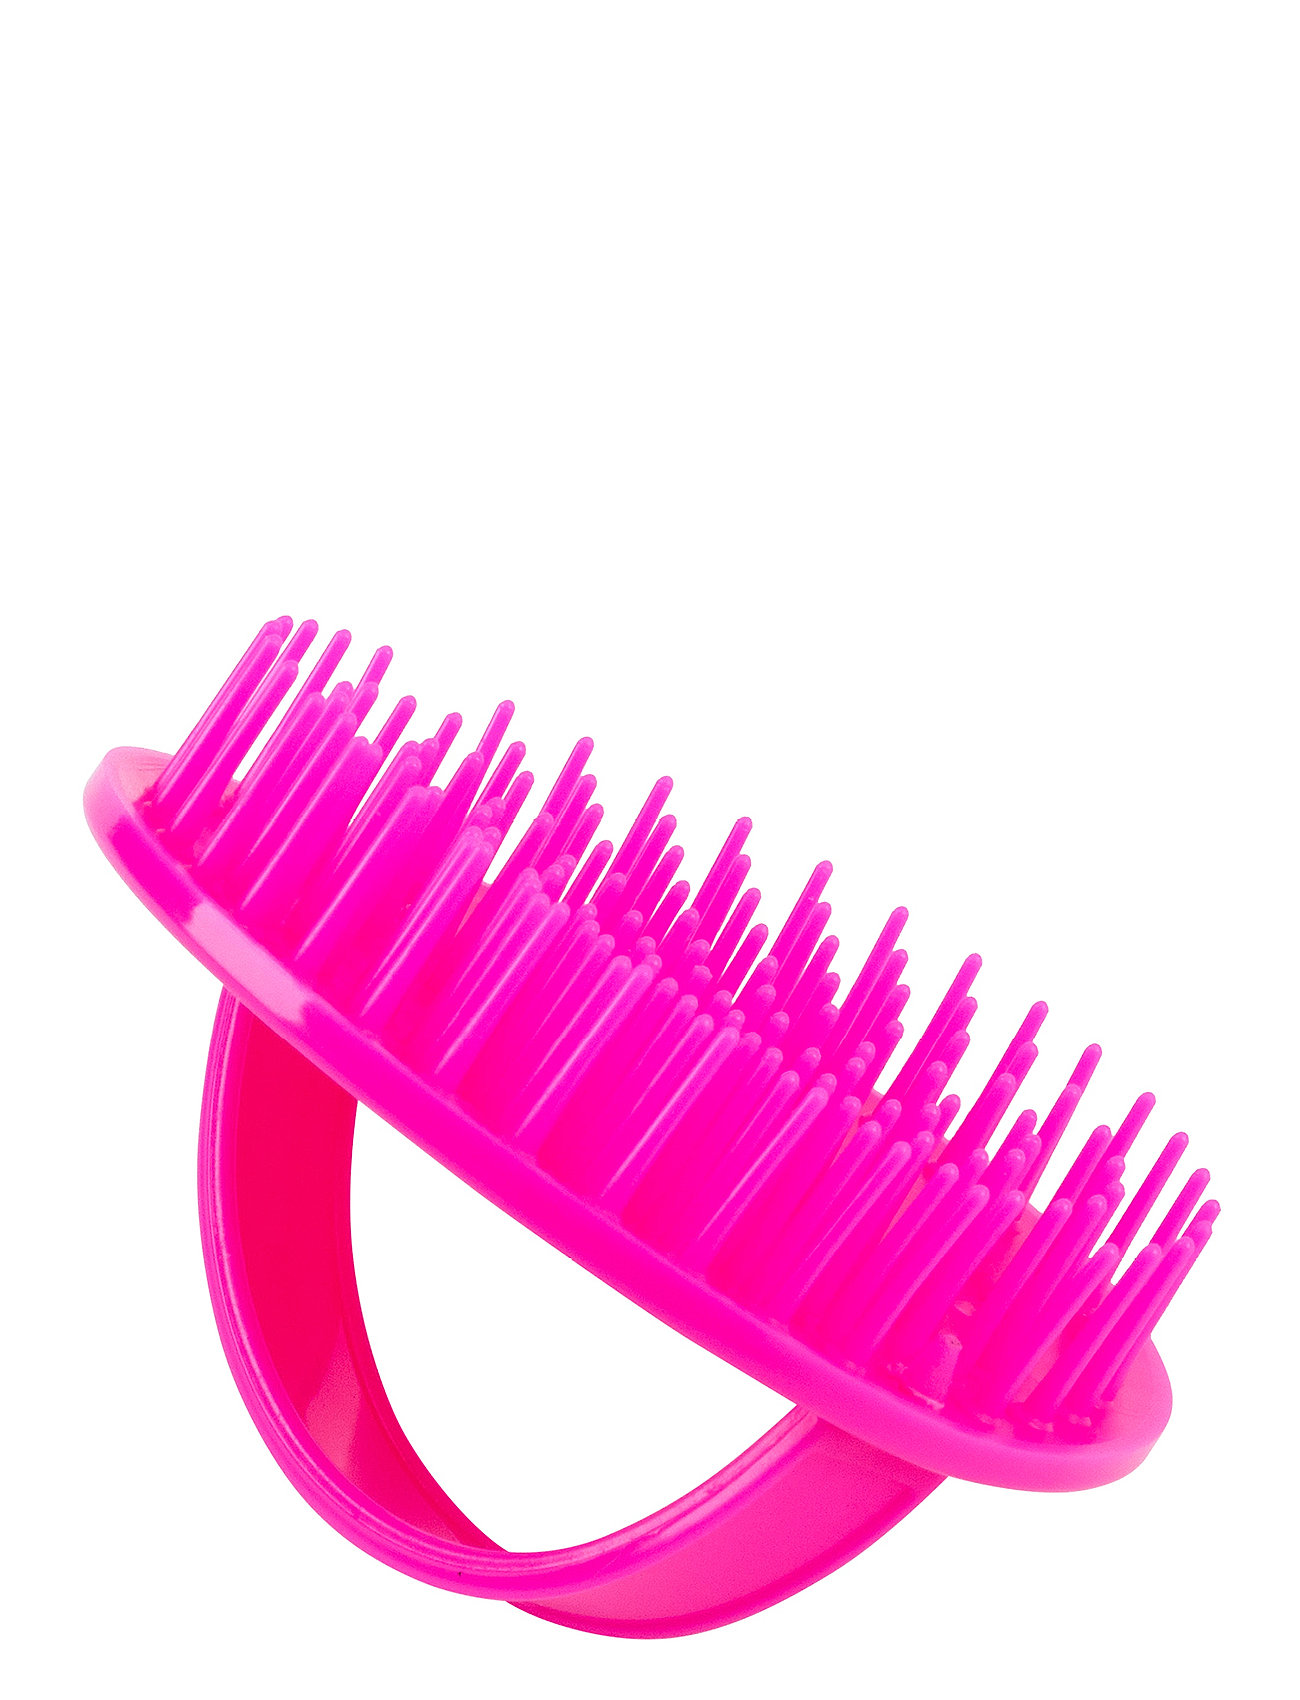 Denman D6 Original Be Bop Scalp Massager & Shower Brush Pink Beauty Women Skin Care Bath Products Pink Denman